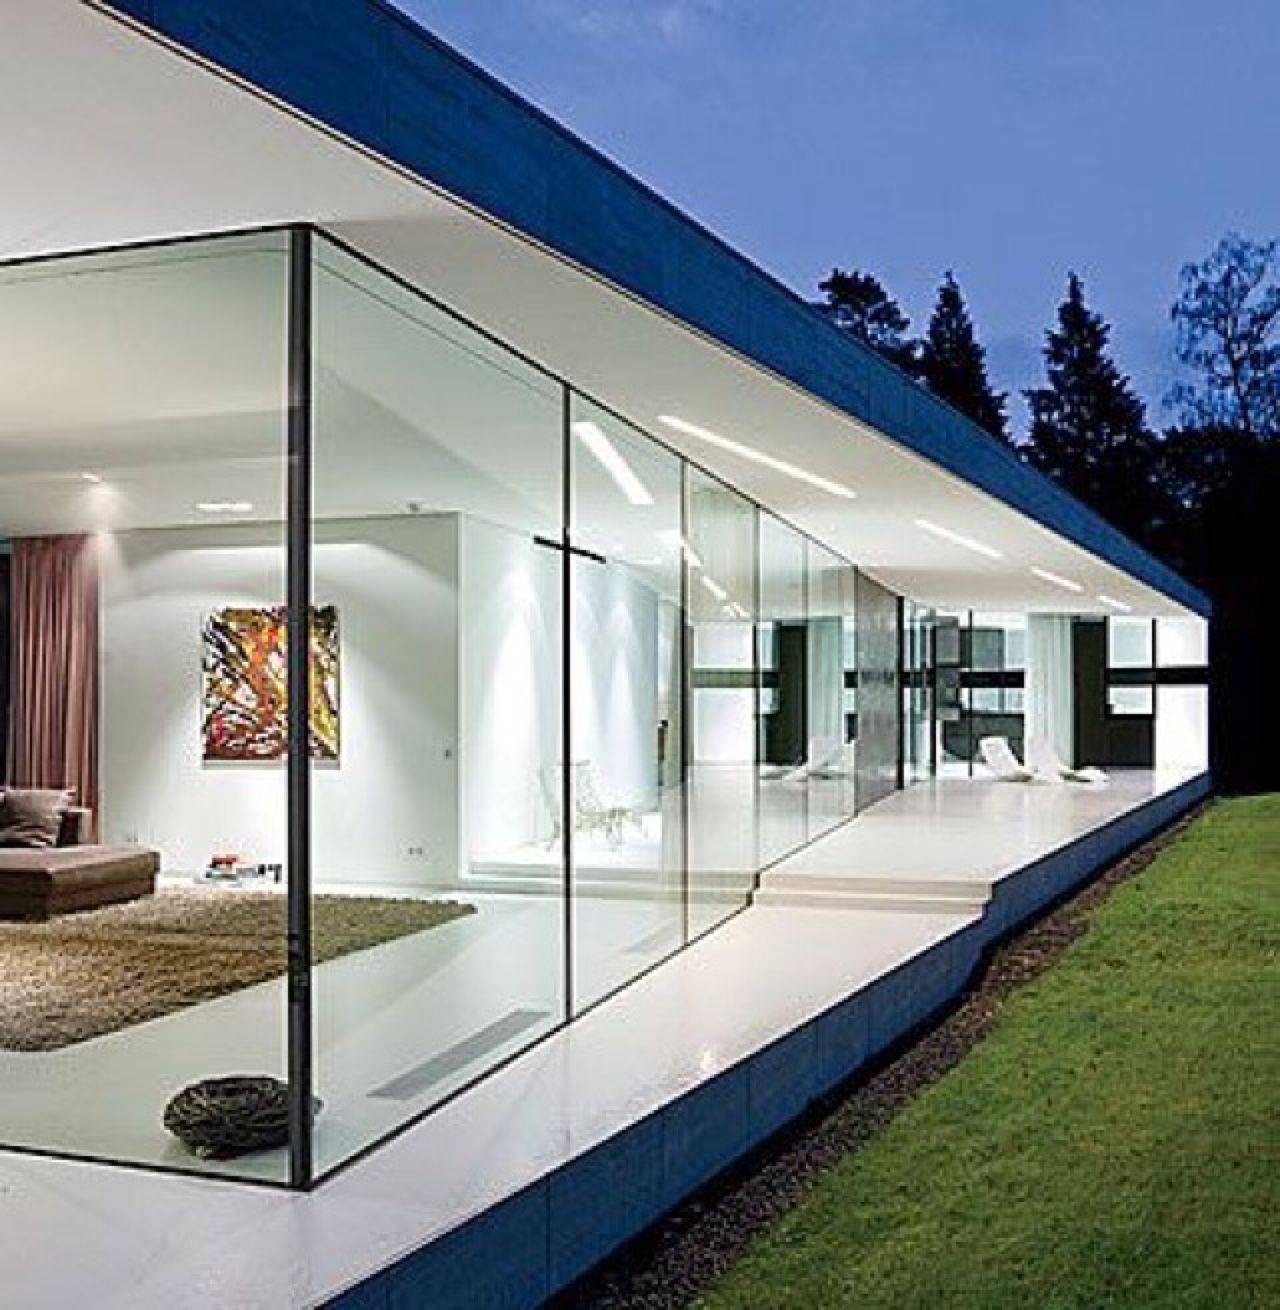 Чем примечательны дома из стекла и бетона?